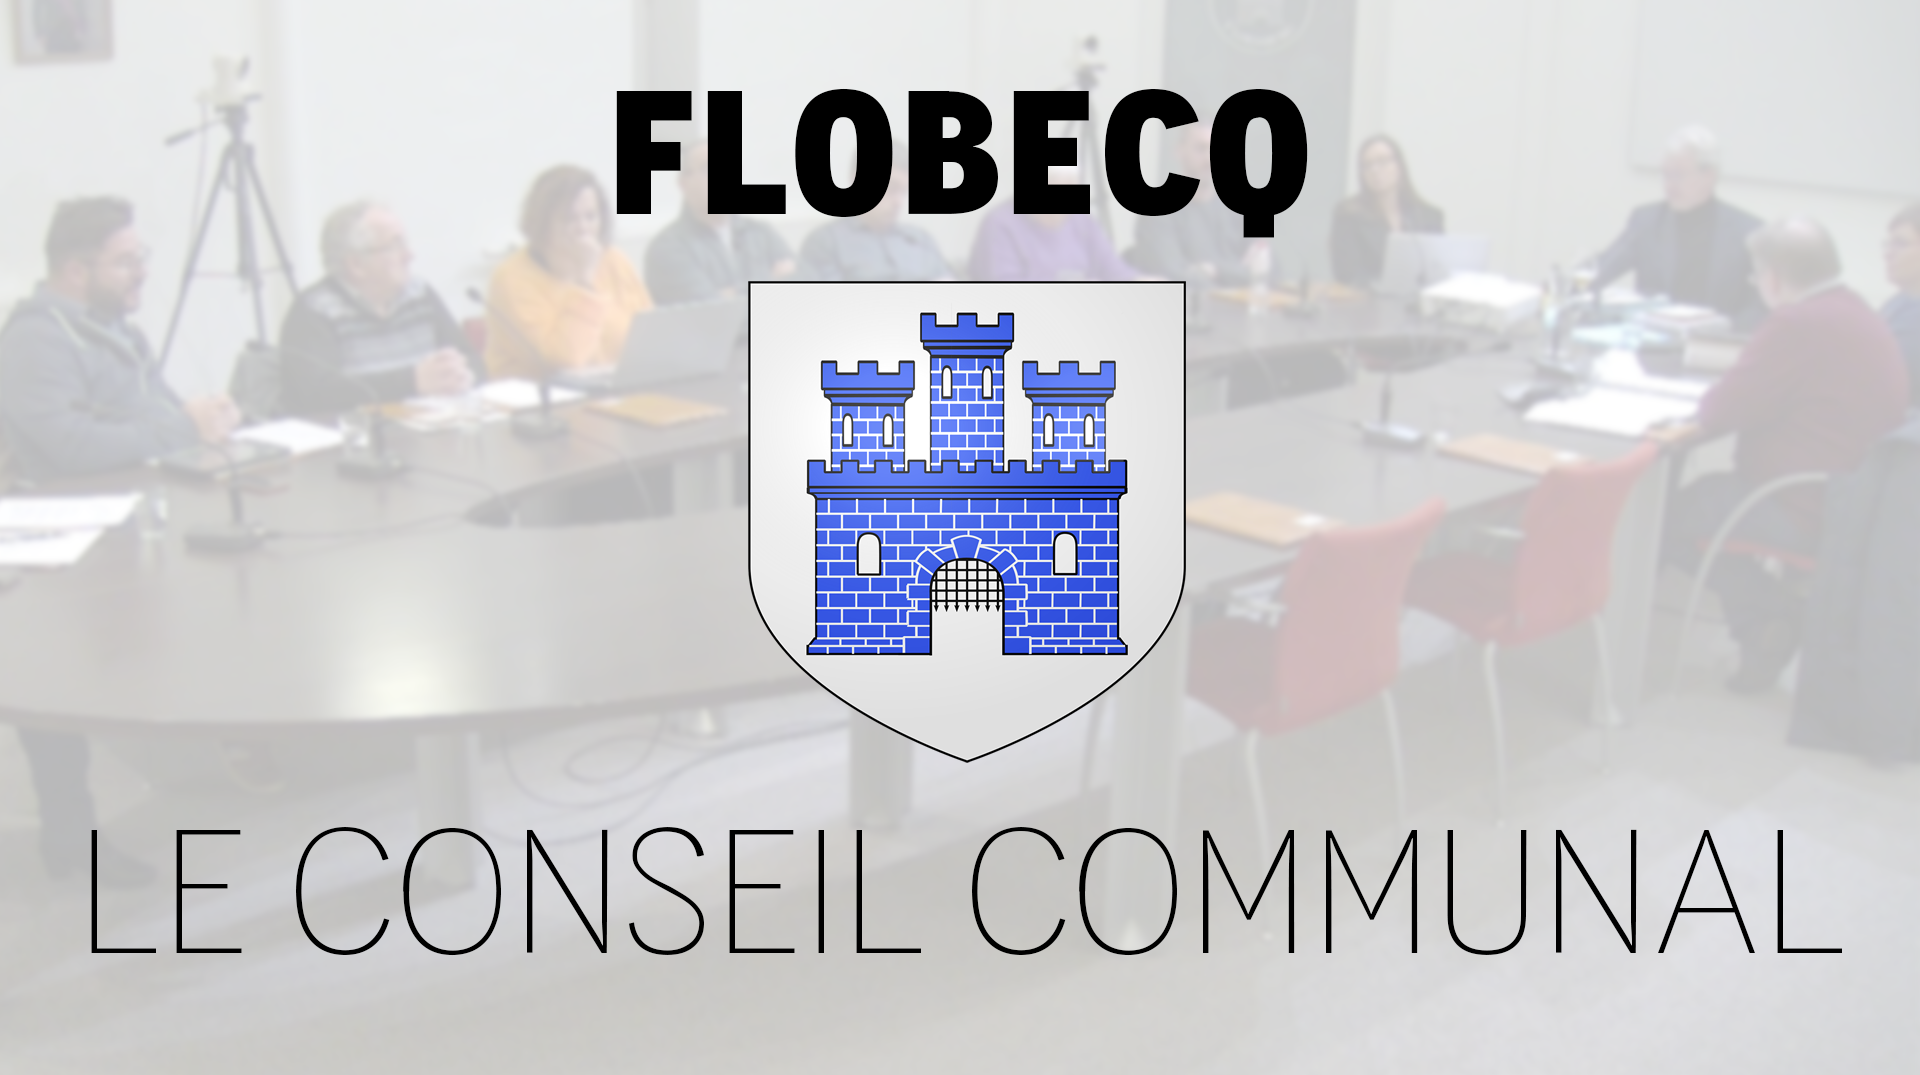 Le conseil communal de Flobecq